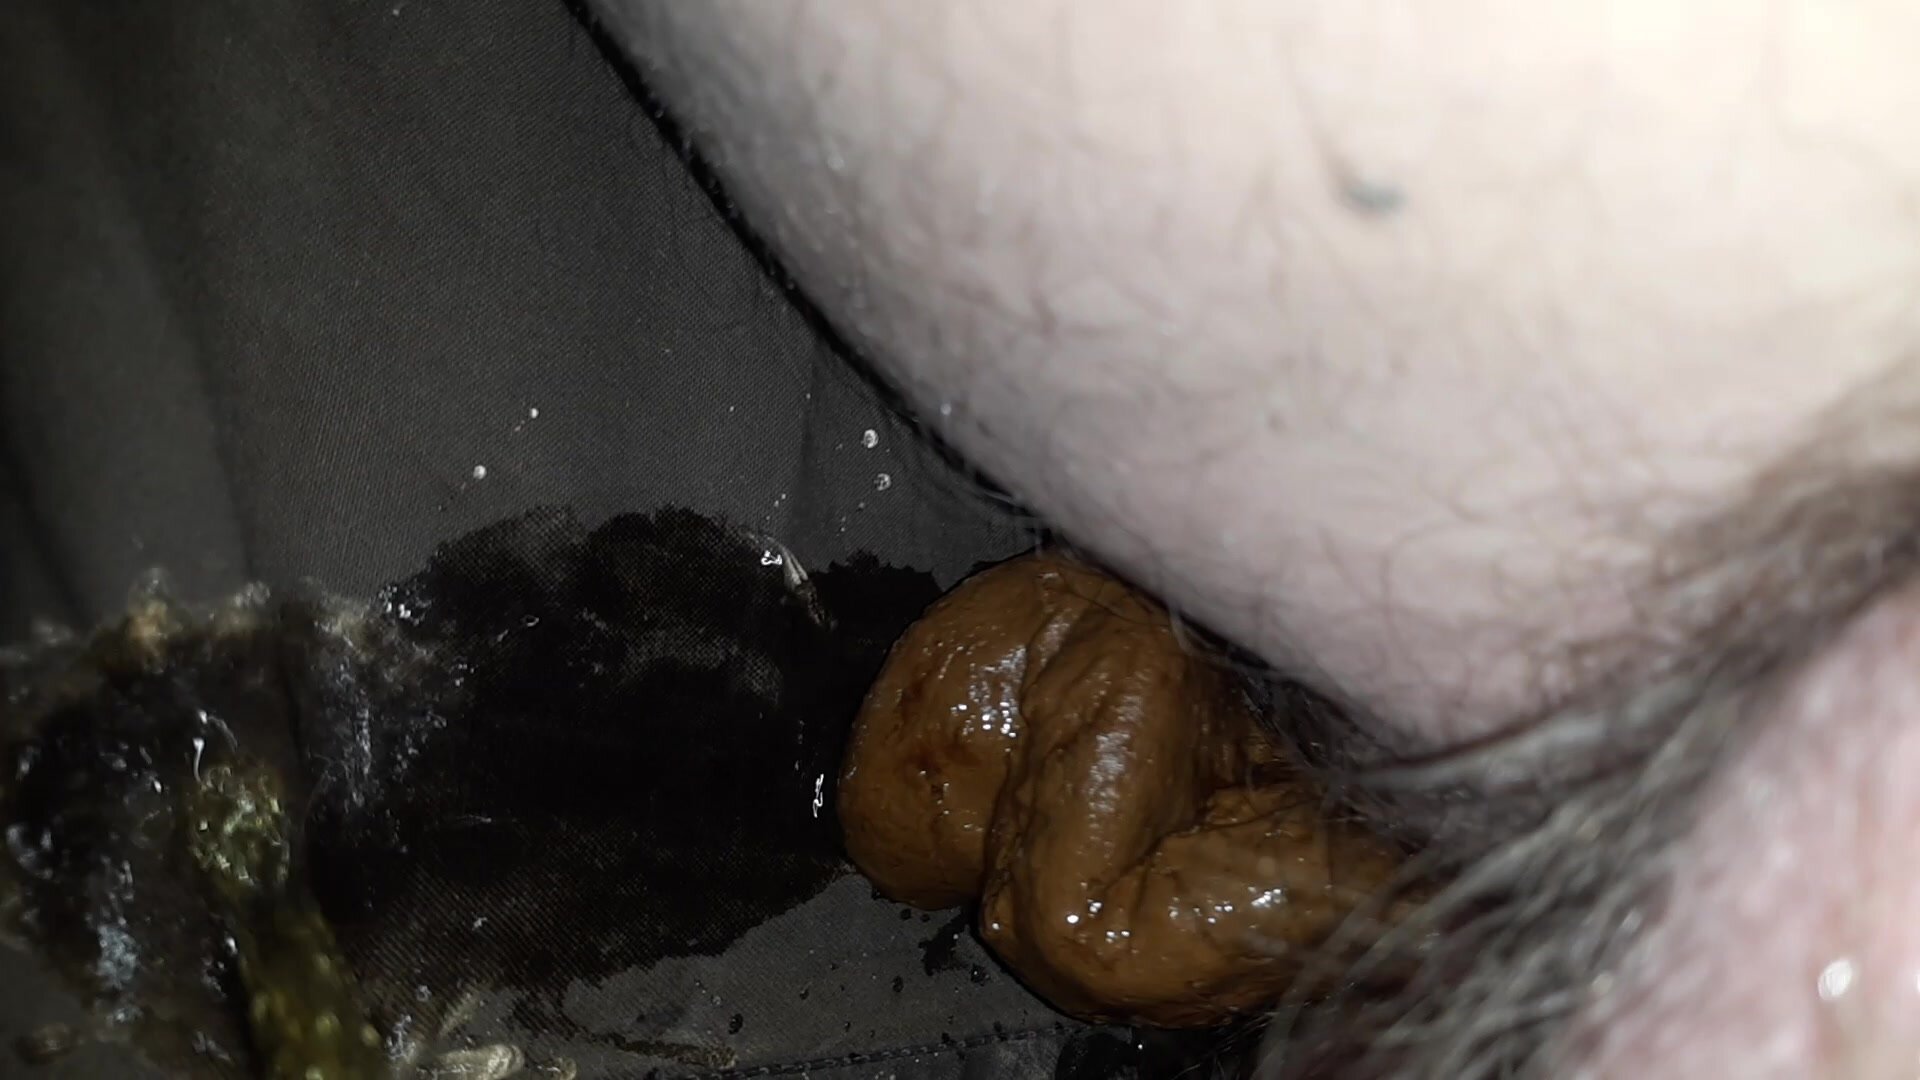 Pooping in my pants (inside view)